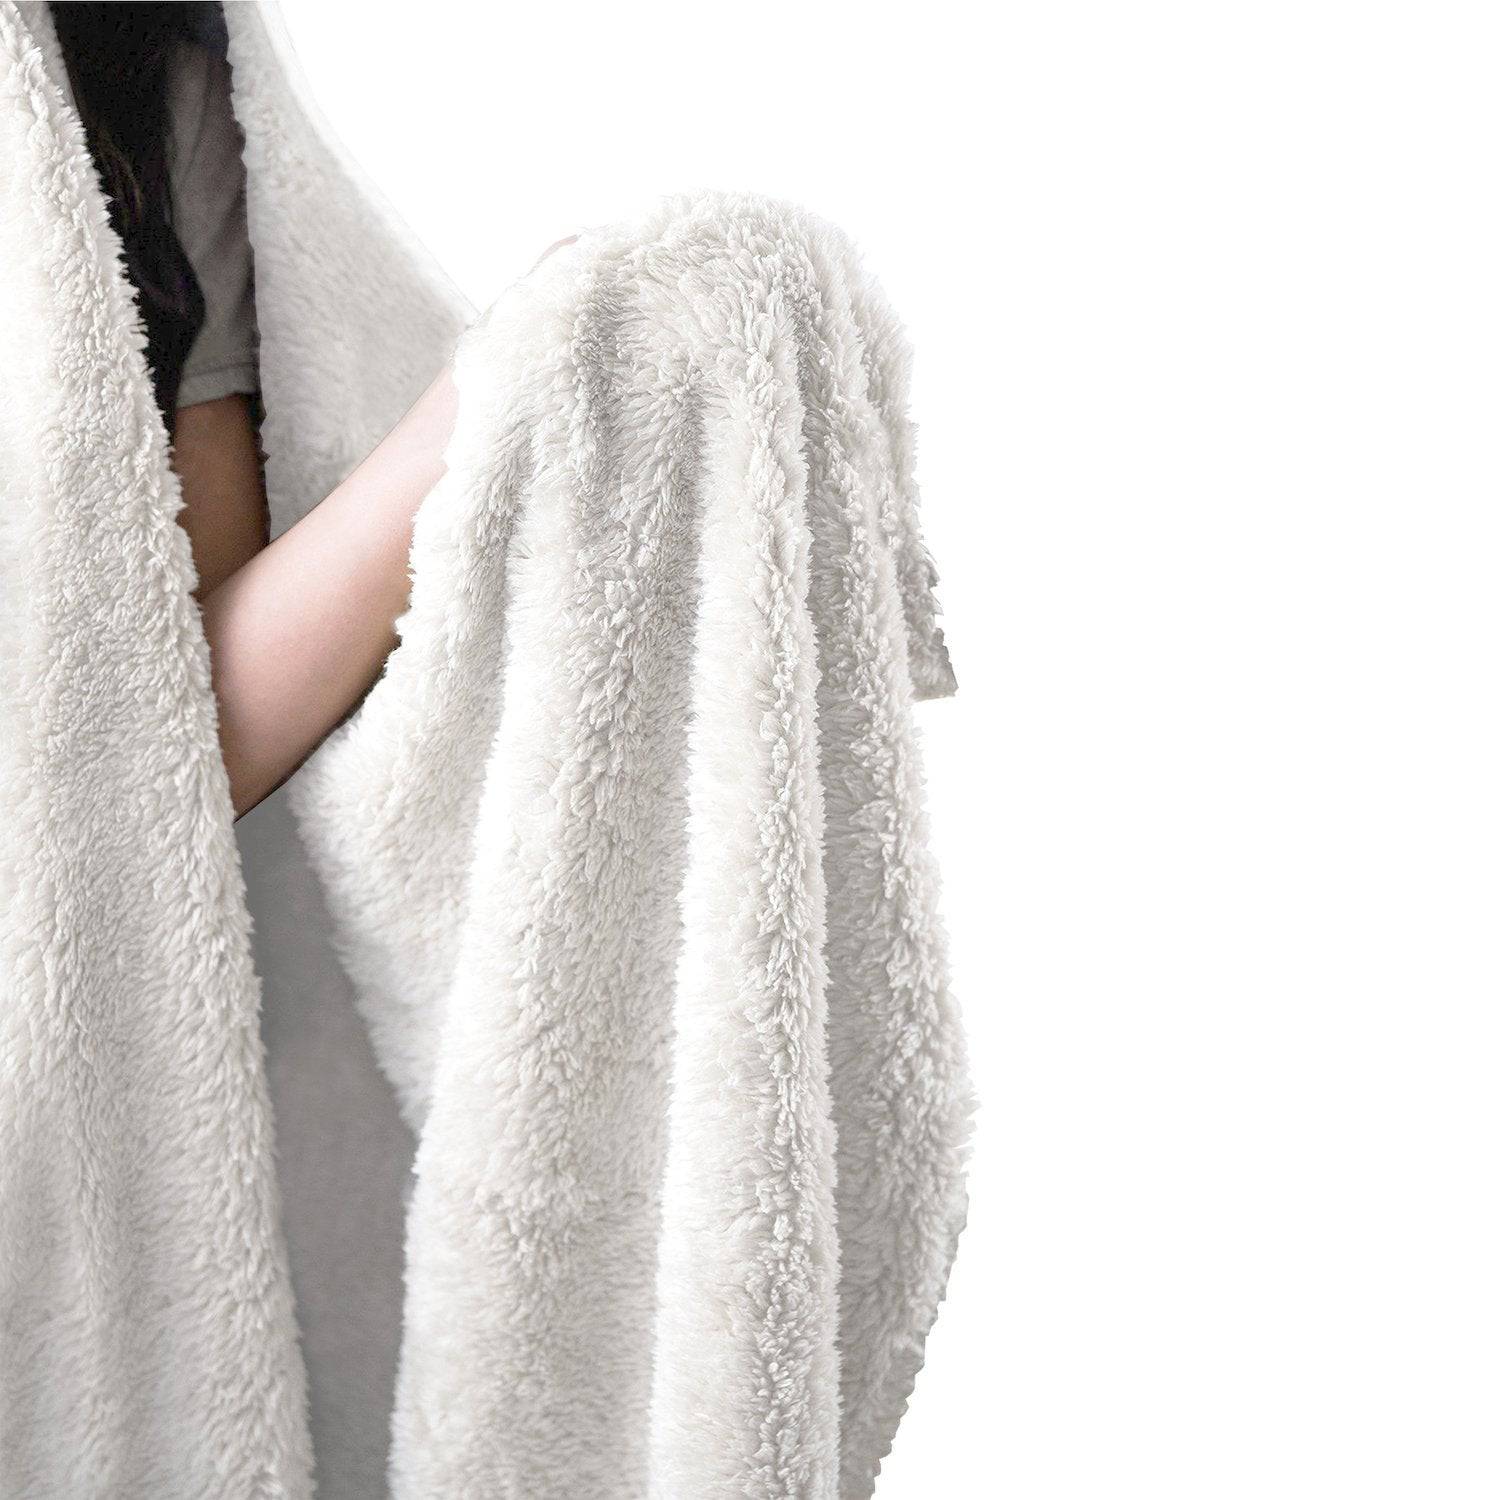 Fractalized Hooded Blanket, Yantrart Design, | iEDM